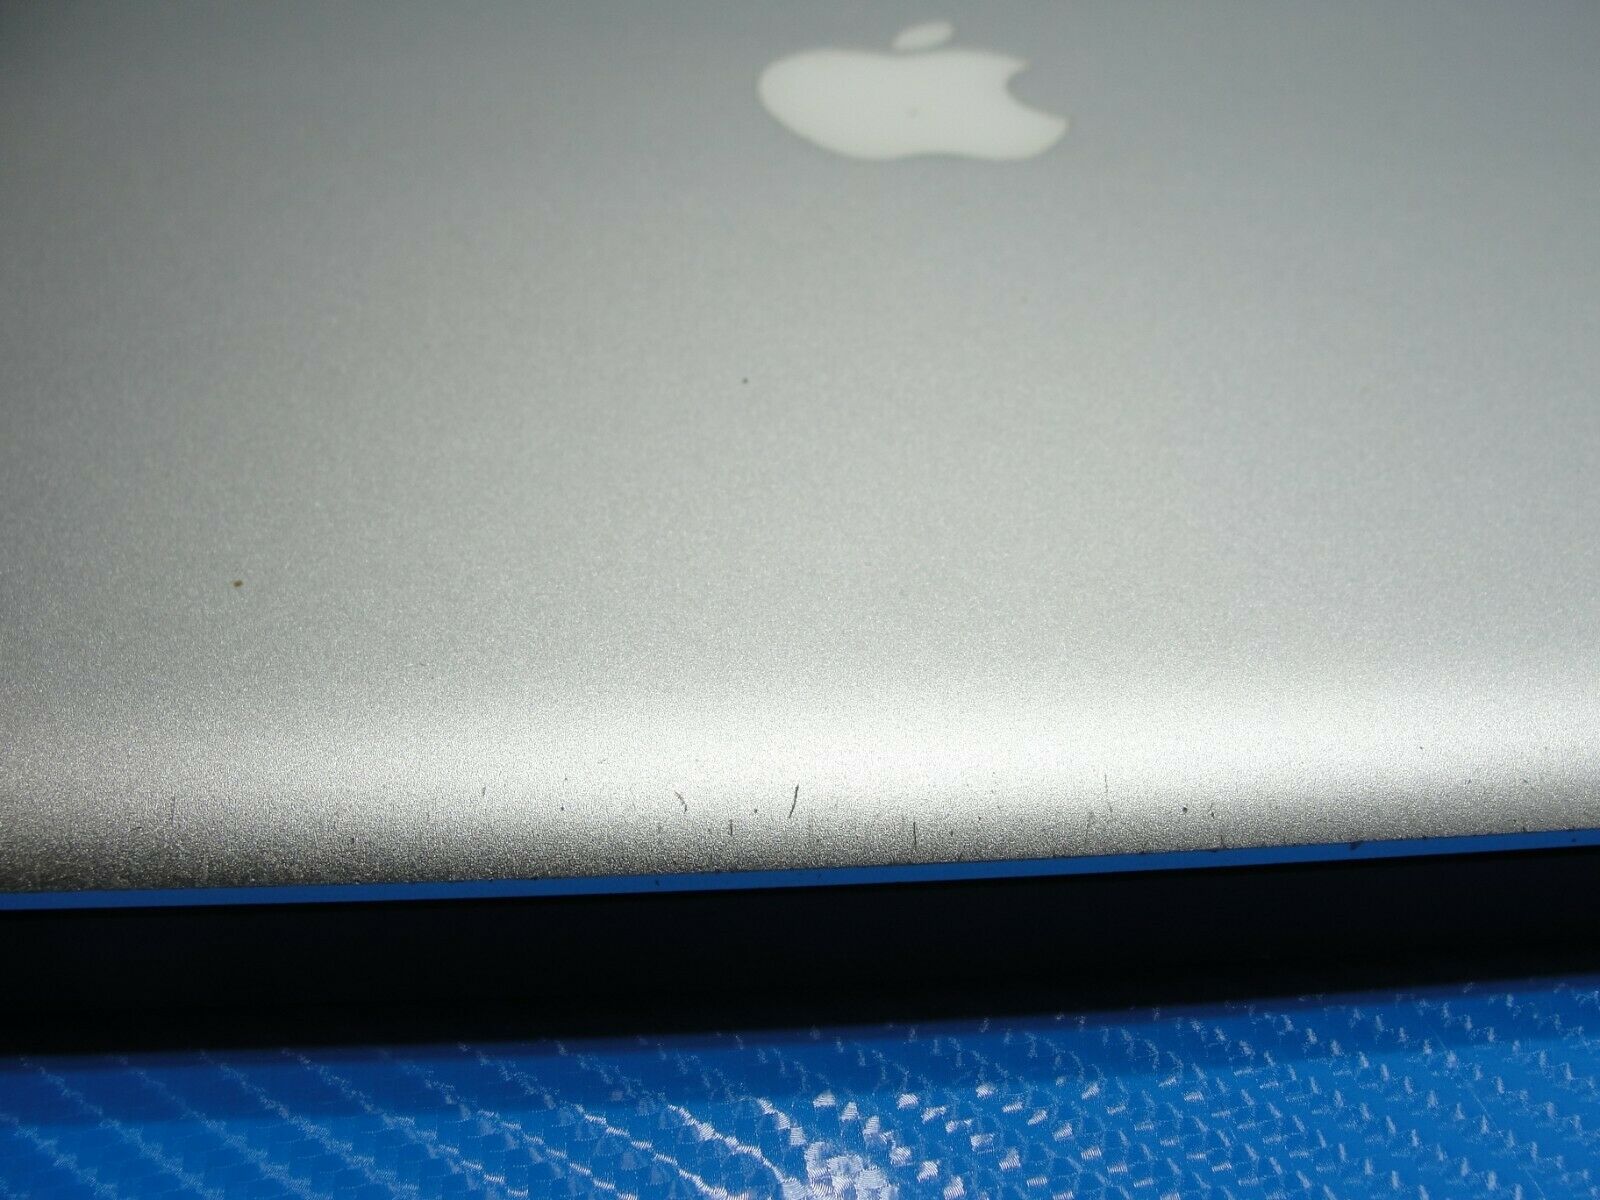 MacBook Pro A1286 MC371LL 2010 15.4